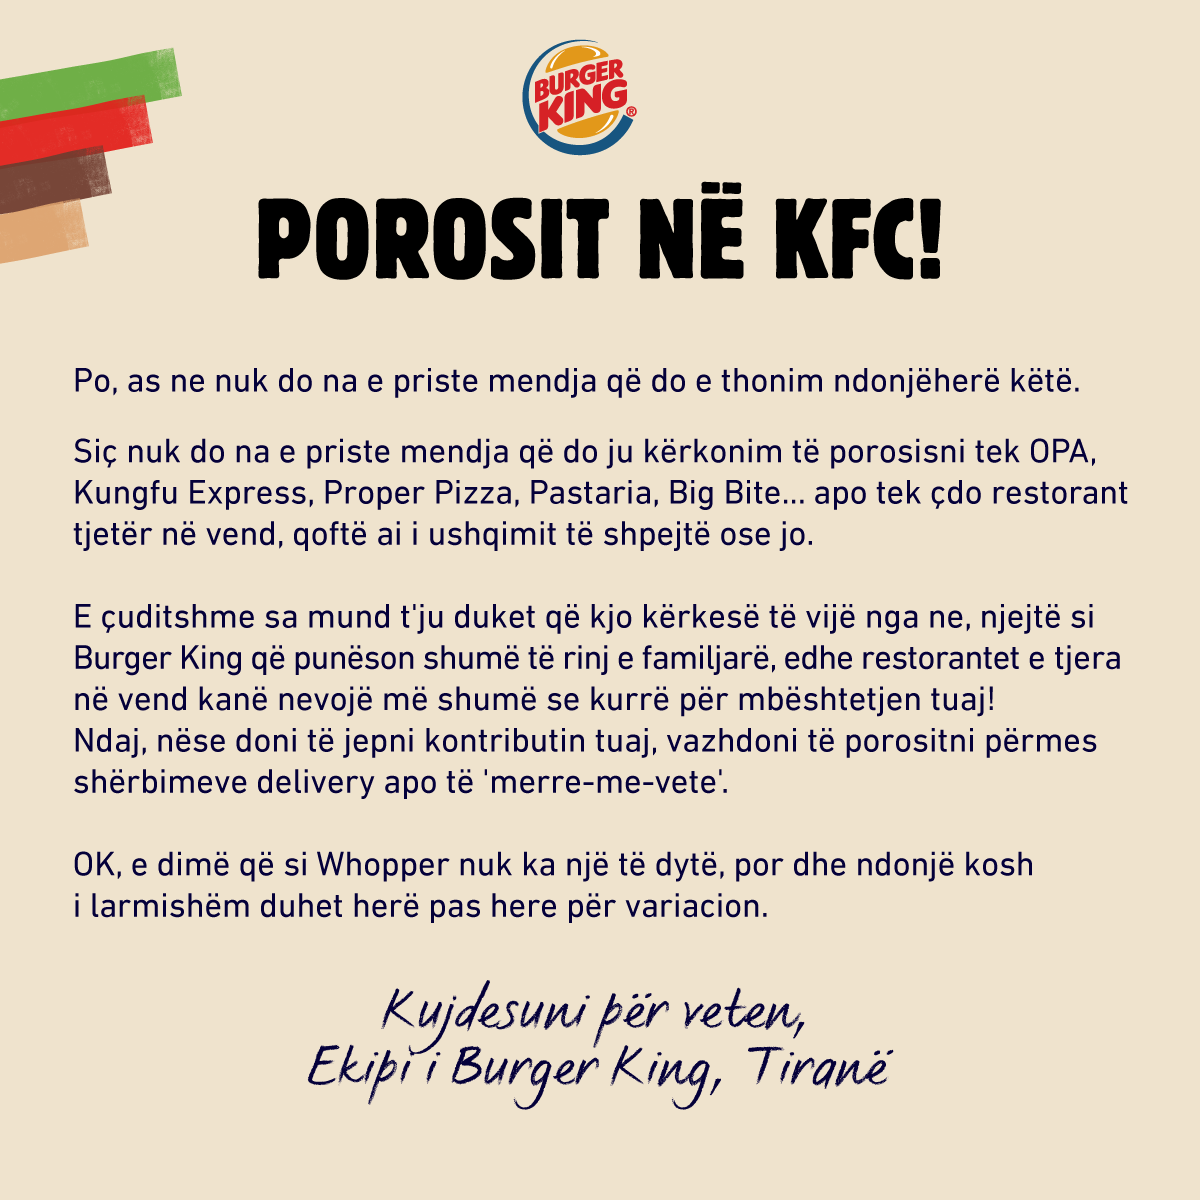 Burger King solidarizohet me konkurentët: “Të mbështesim njëri-tjetrin!”